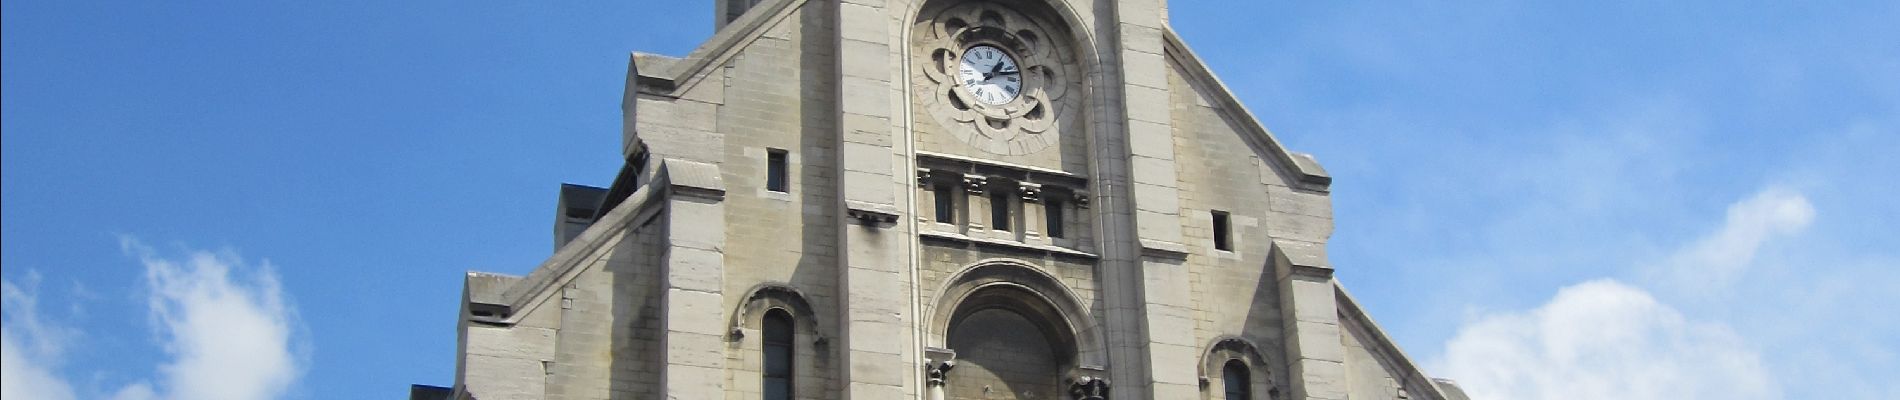 POI Saint-Ouen-sur-Seine - Notre-Dame-du-Rosaire - Photo